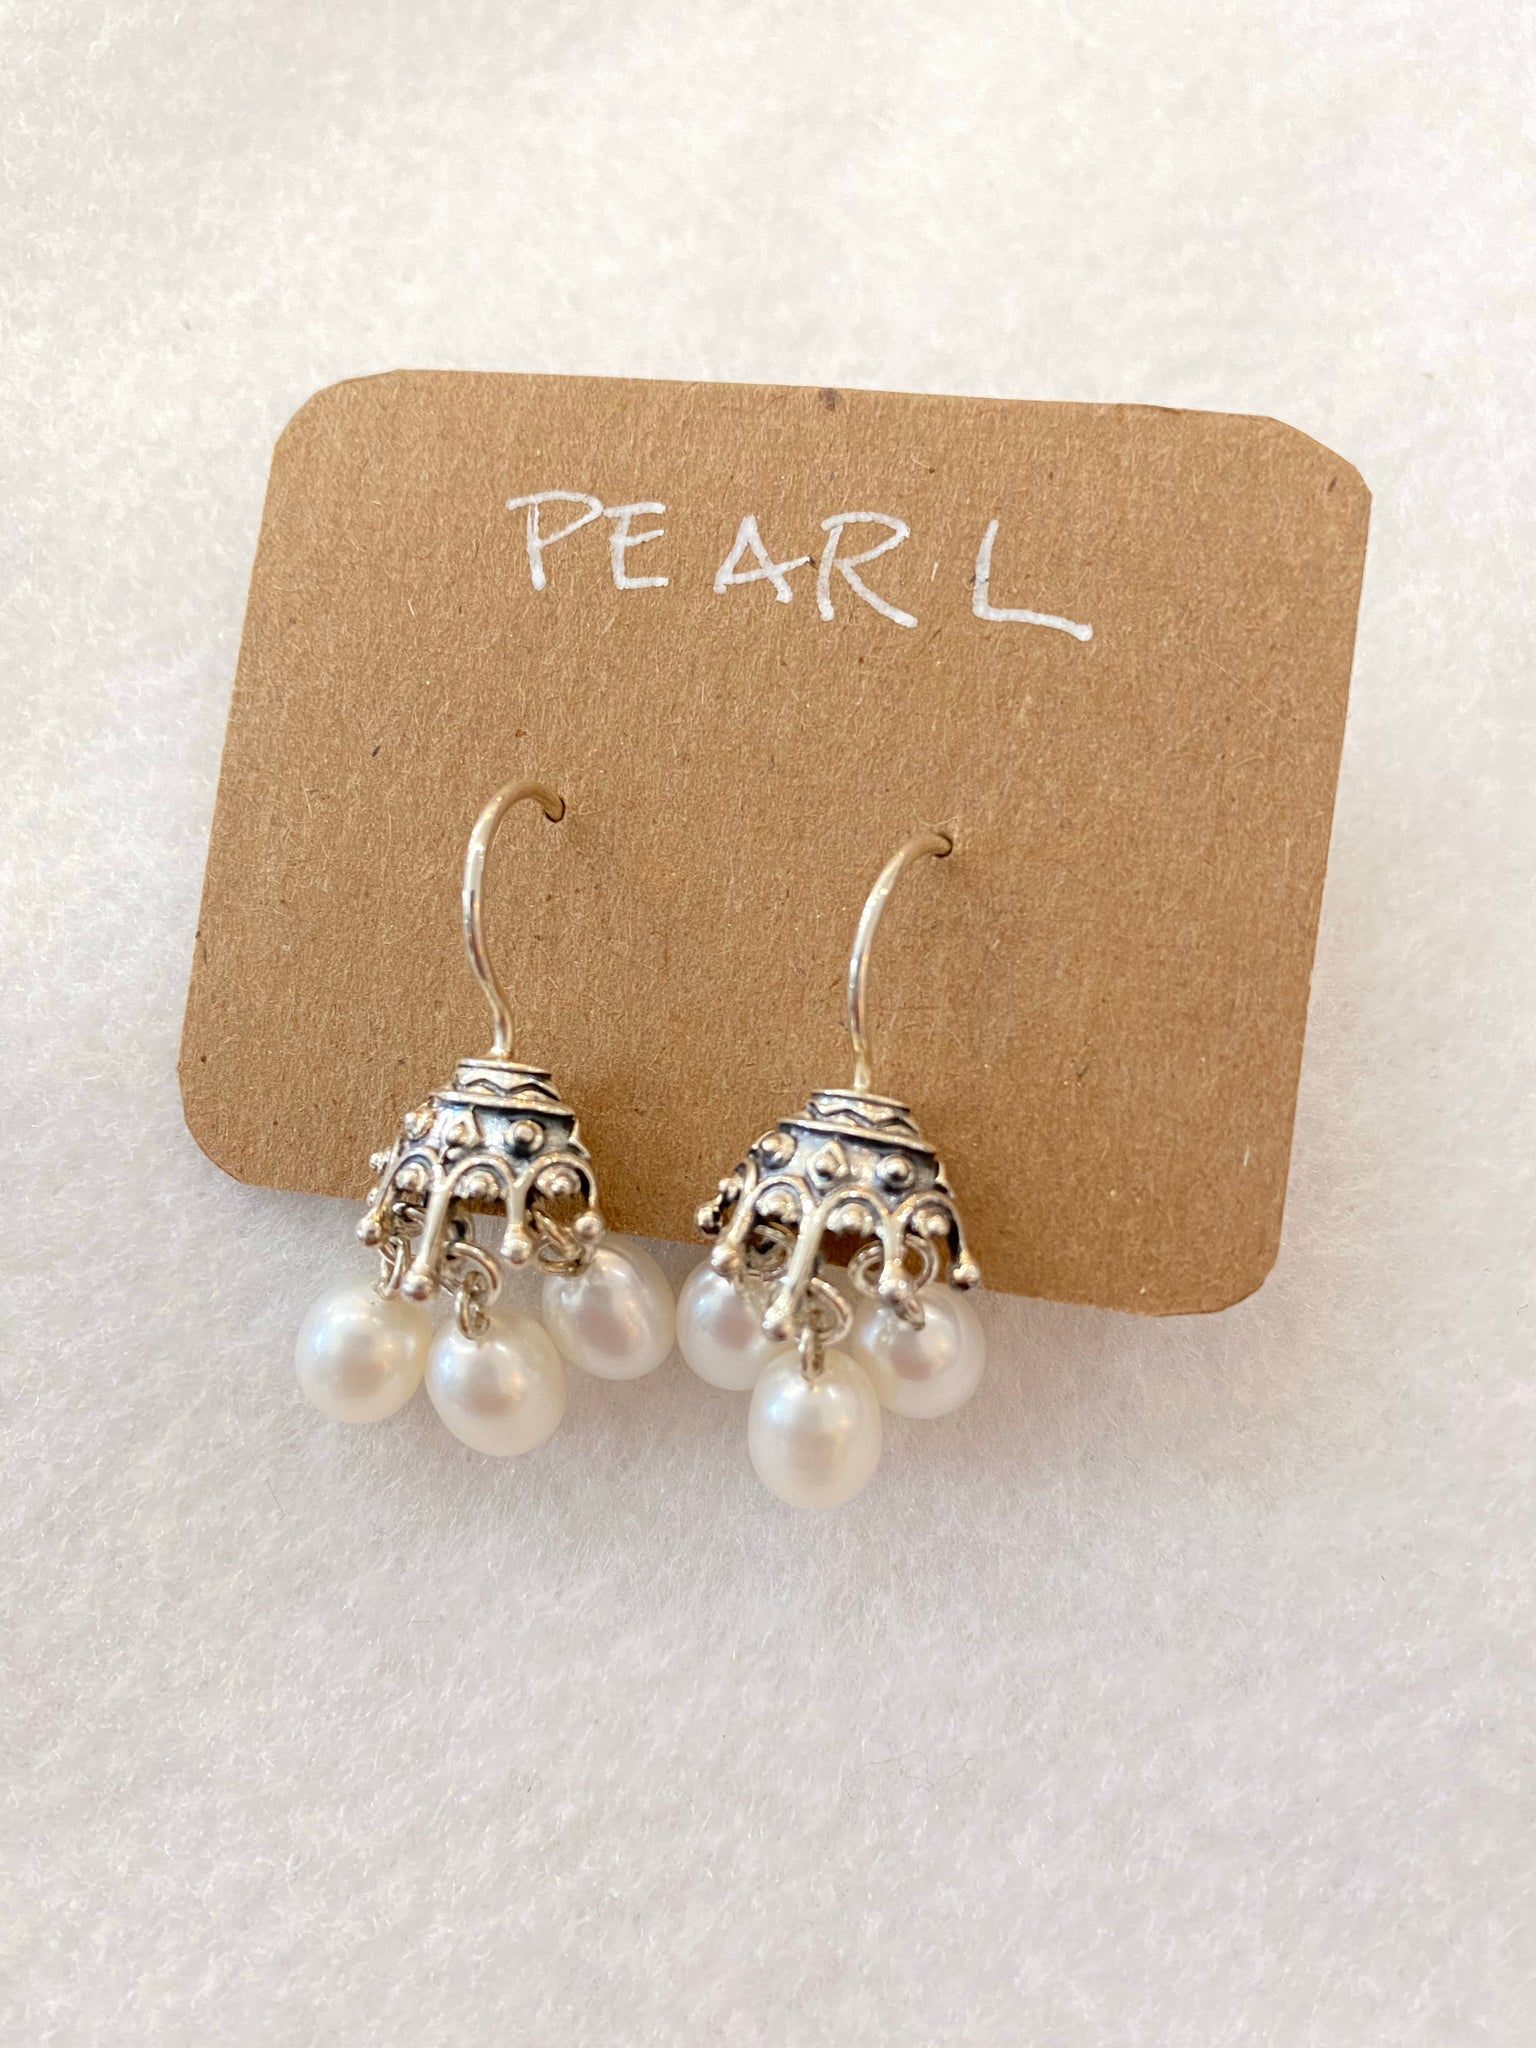 3 Pearls Dangle Earrings